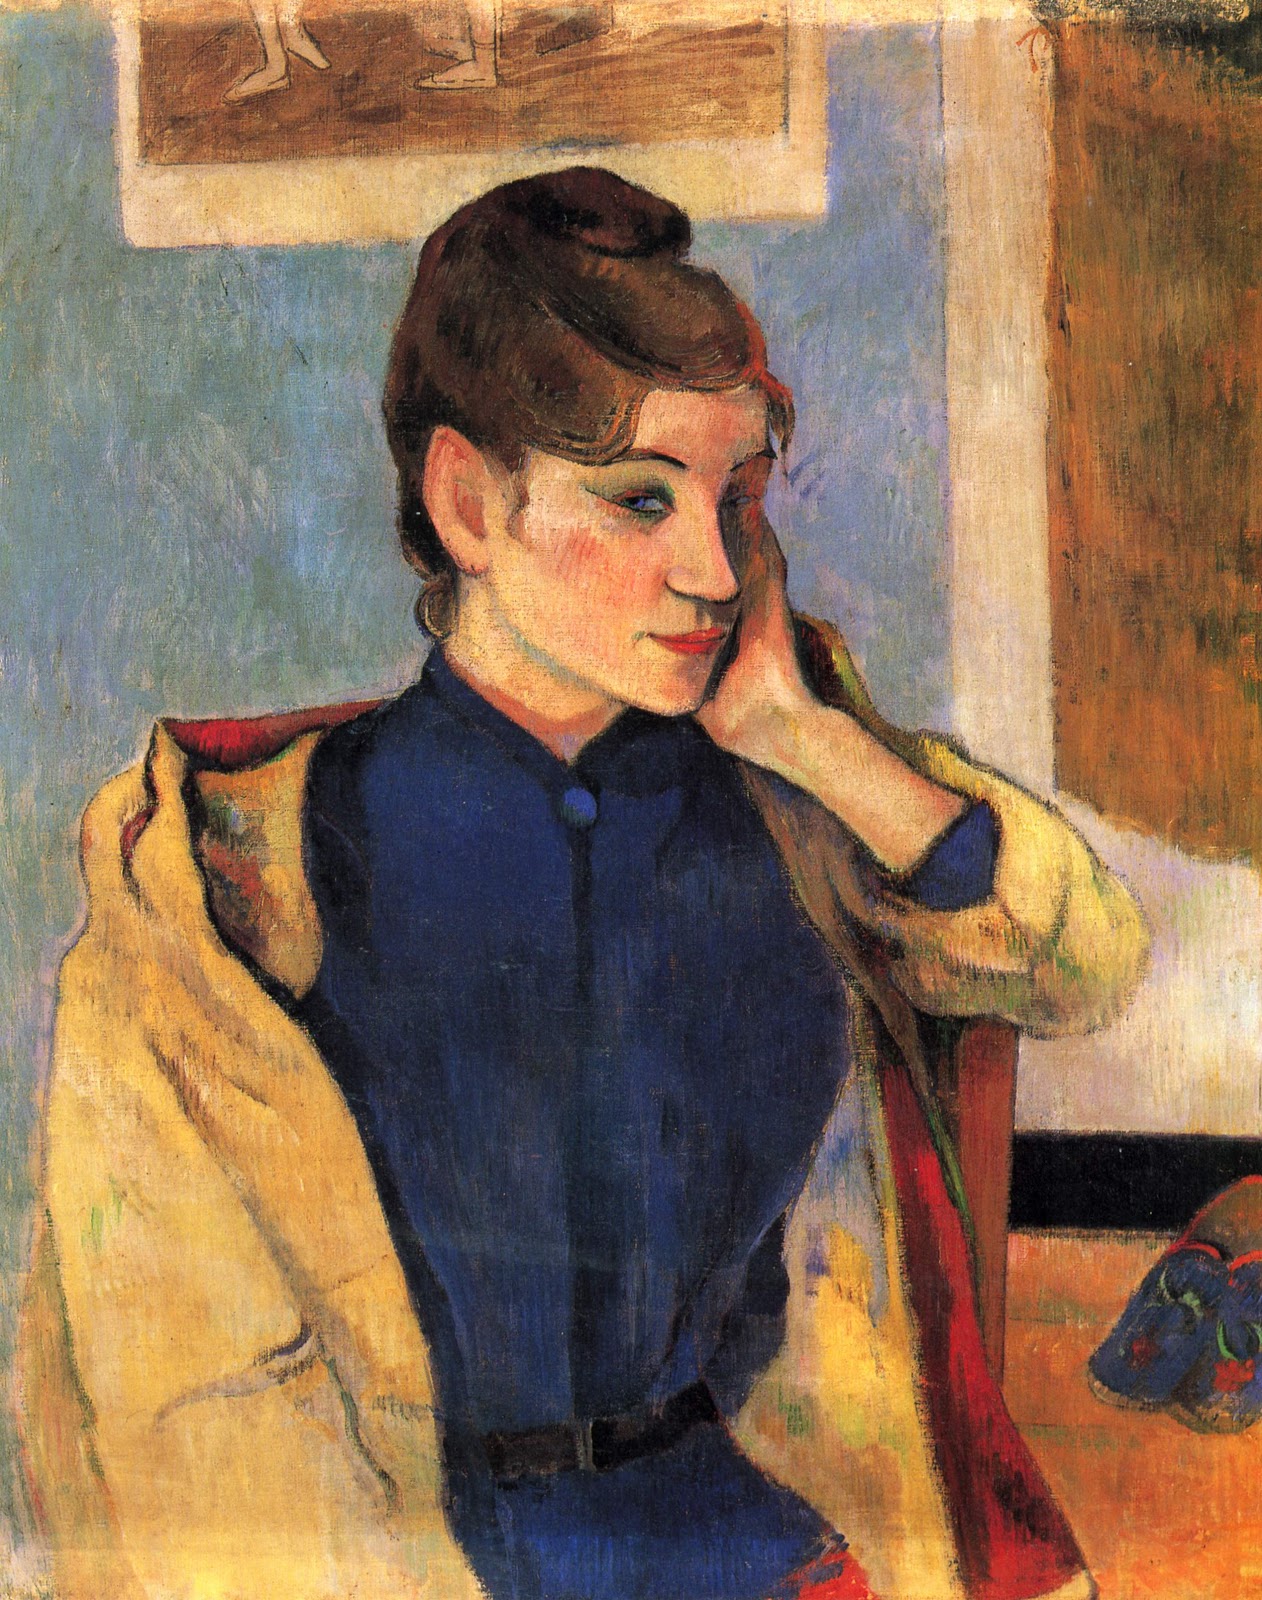 Paul+Gauguin-1848-1903 (498).jpg